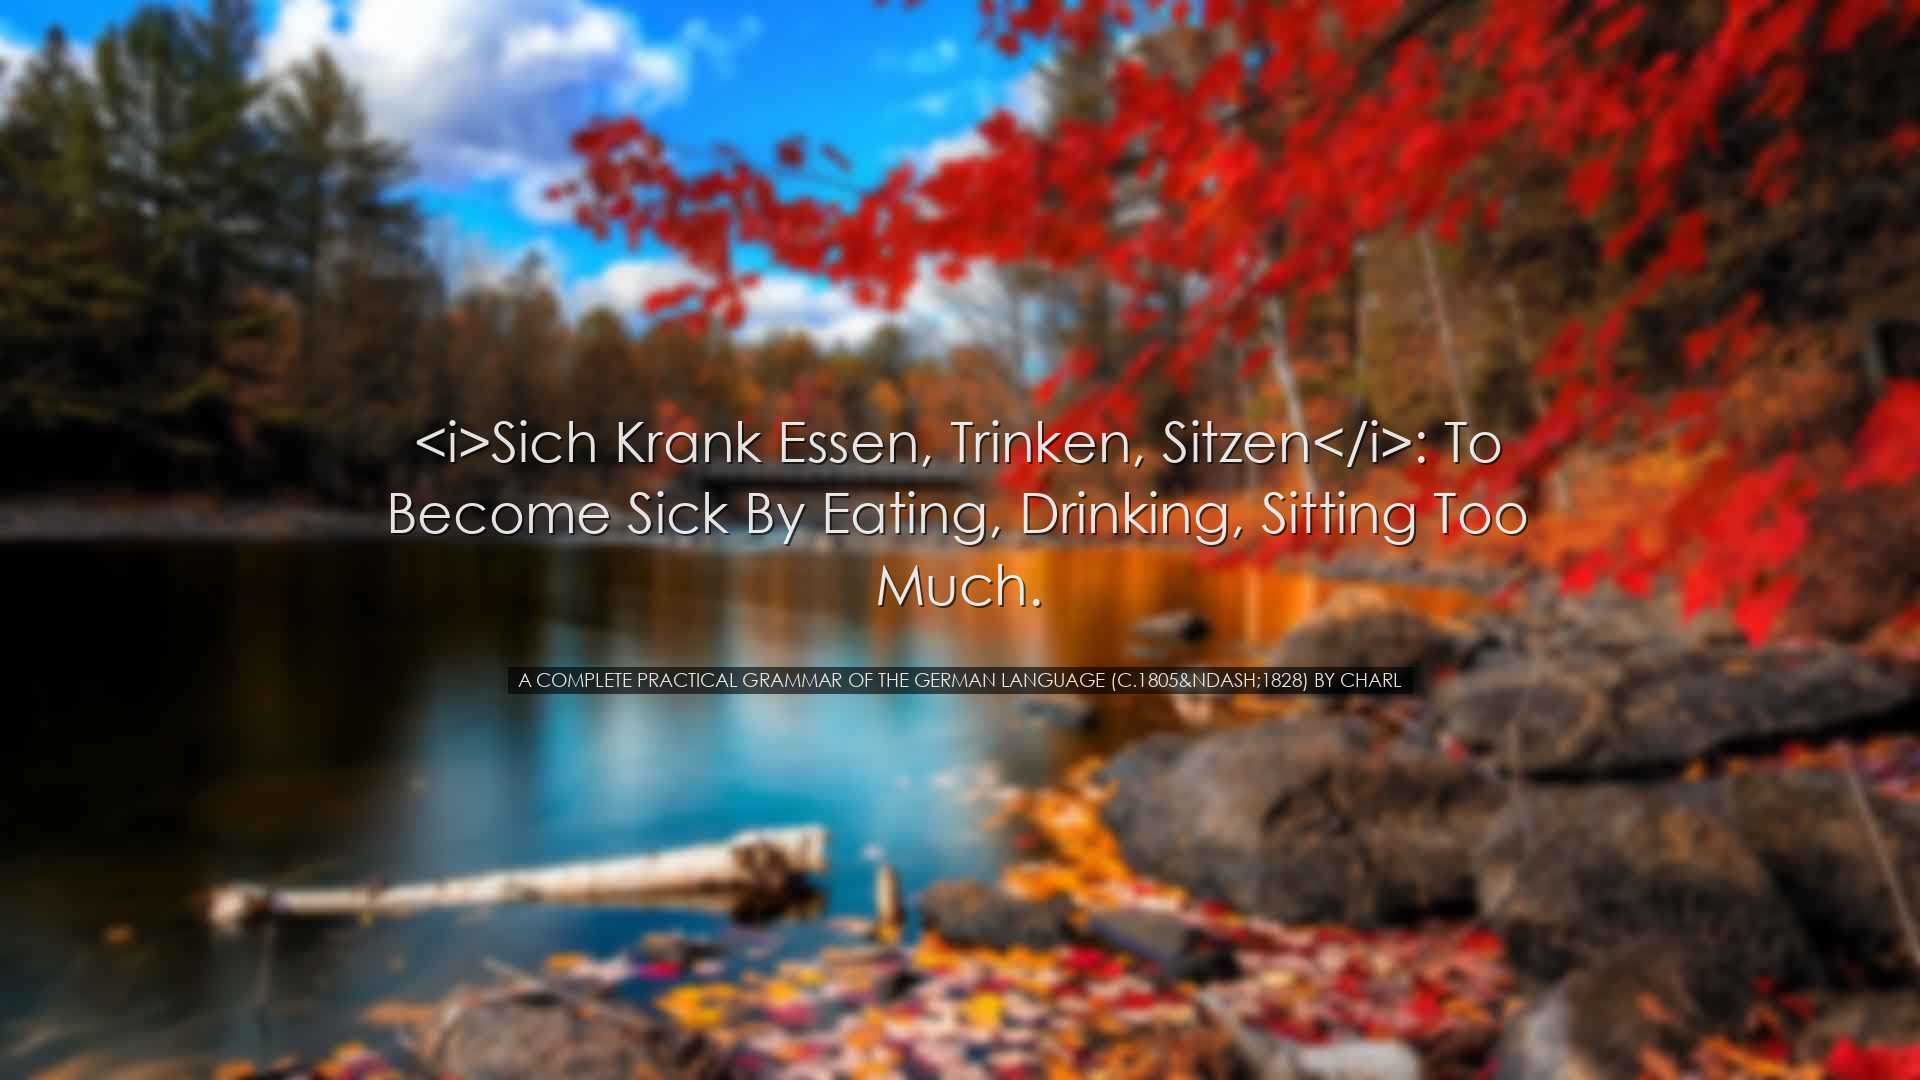 Sich krank essen, trinken, sitzen: to become sick by eating